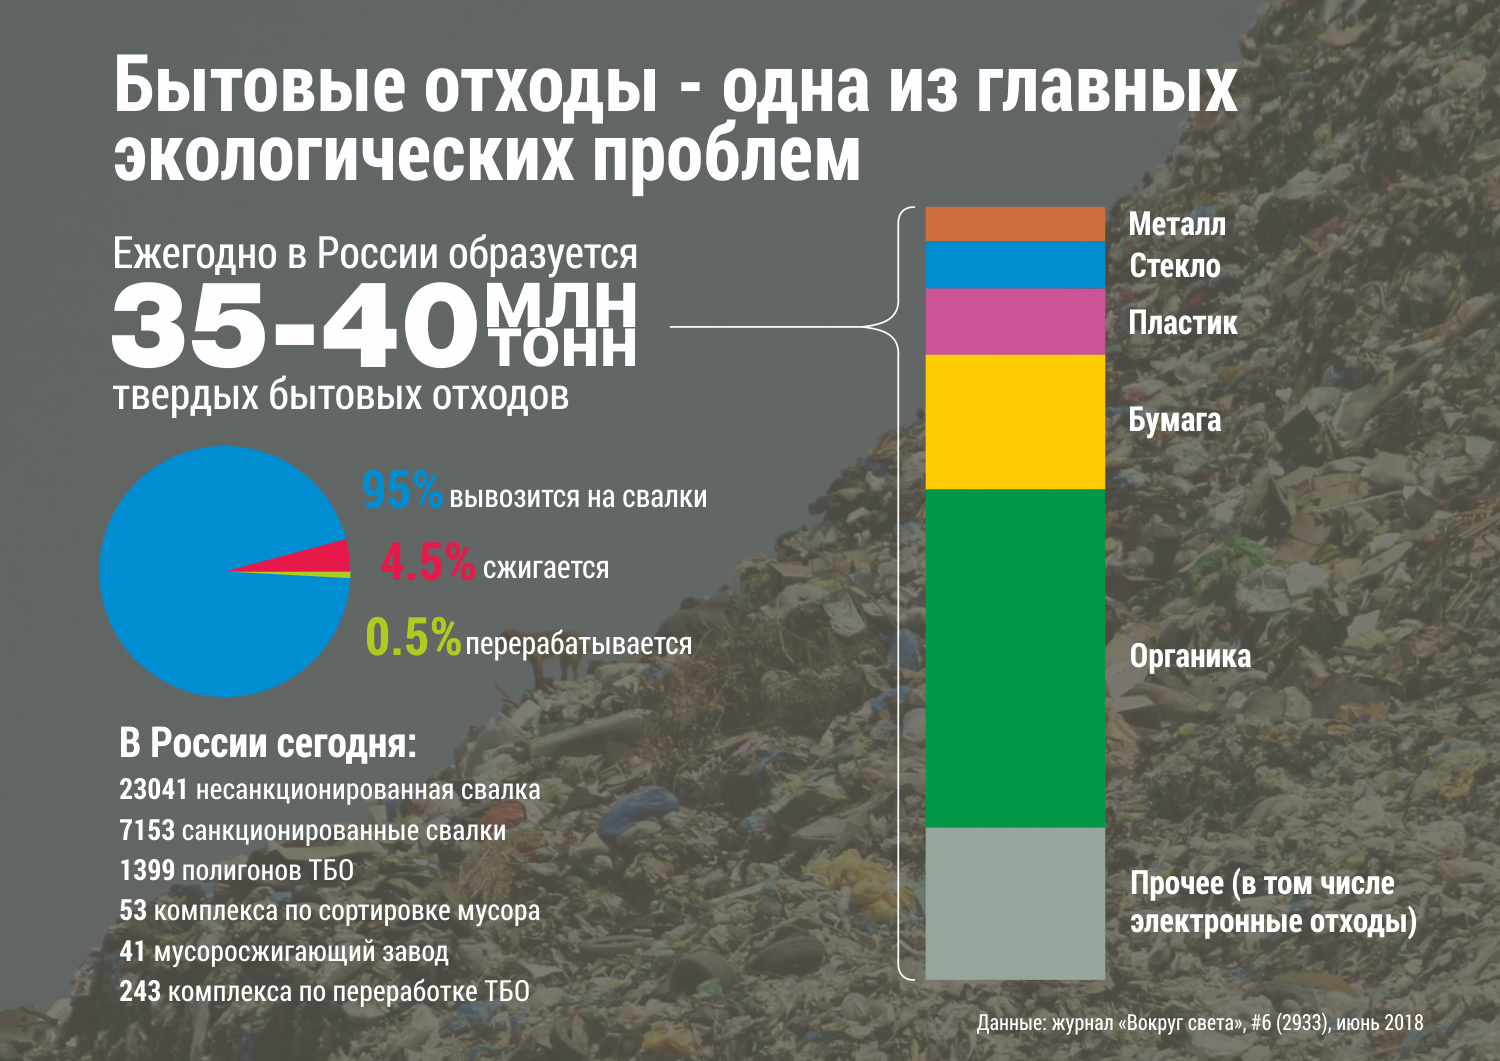 Какая страна сильнее загрязняет планету пластиком и почему? - hi-news.ru